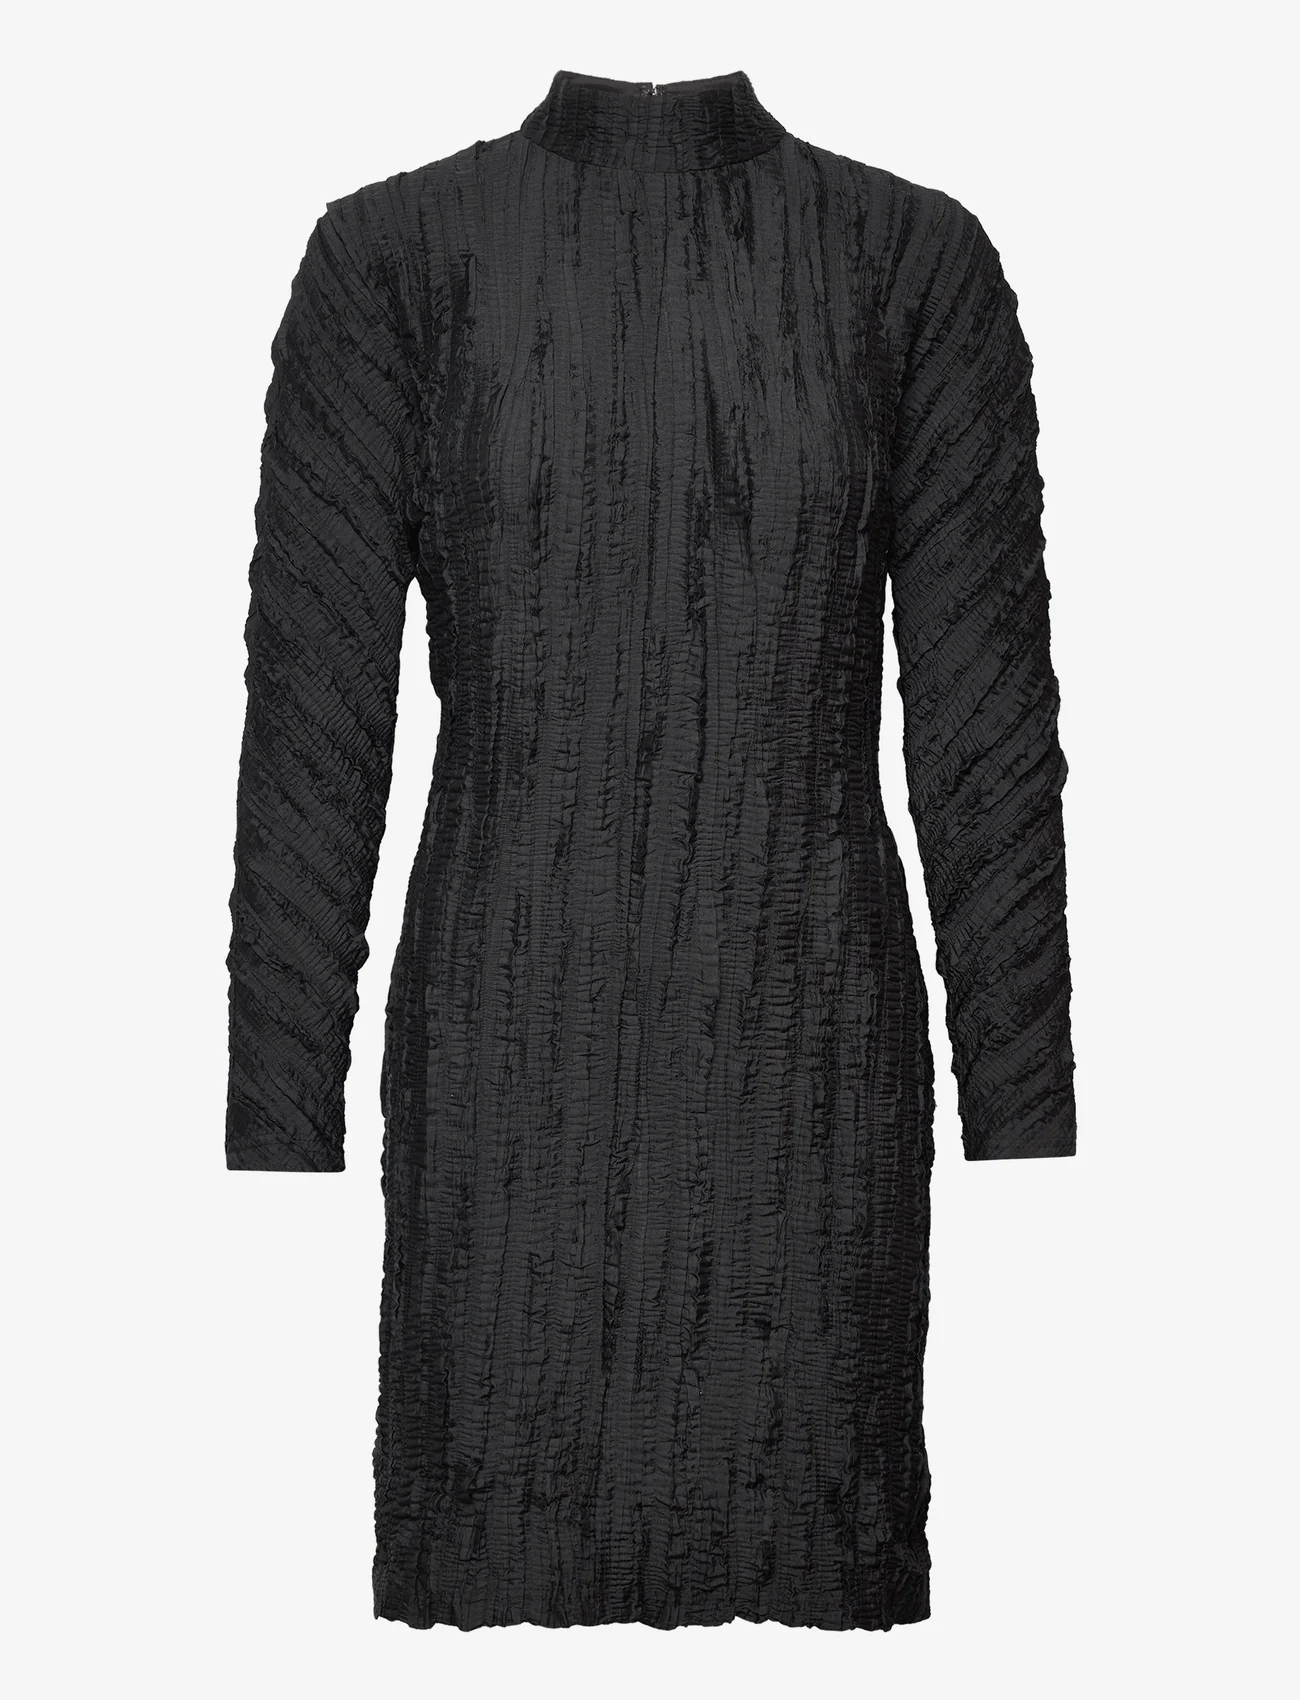 RODEBJER - Rodebjer Avongara - stramme kjoler - black - 0